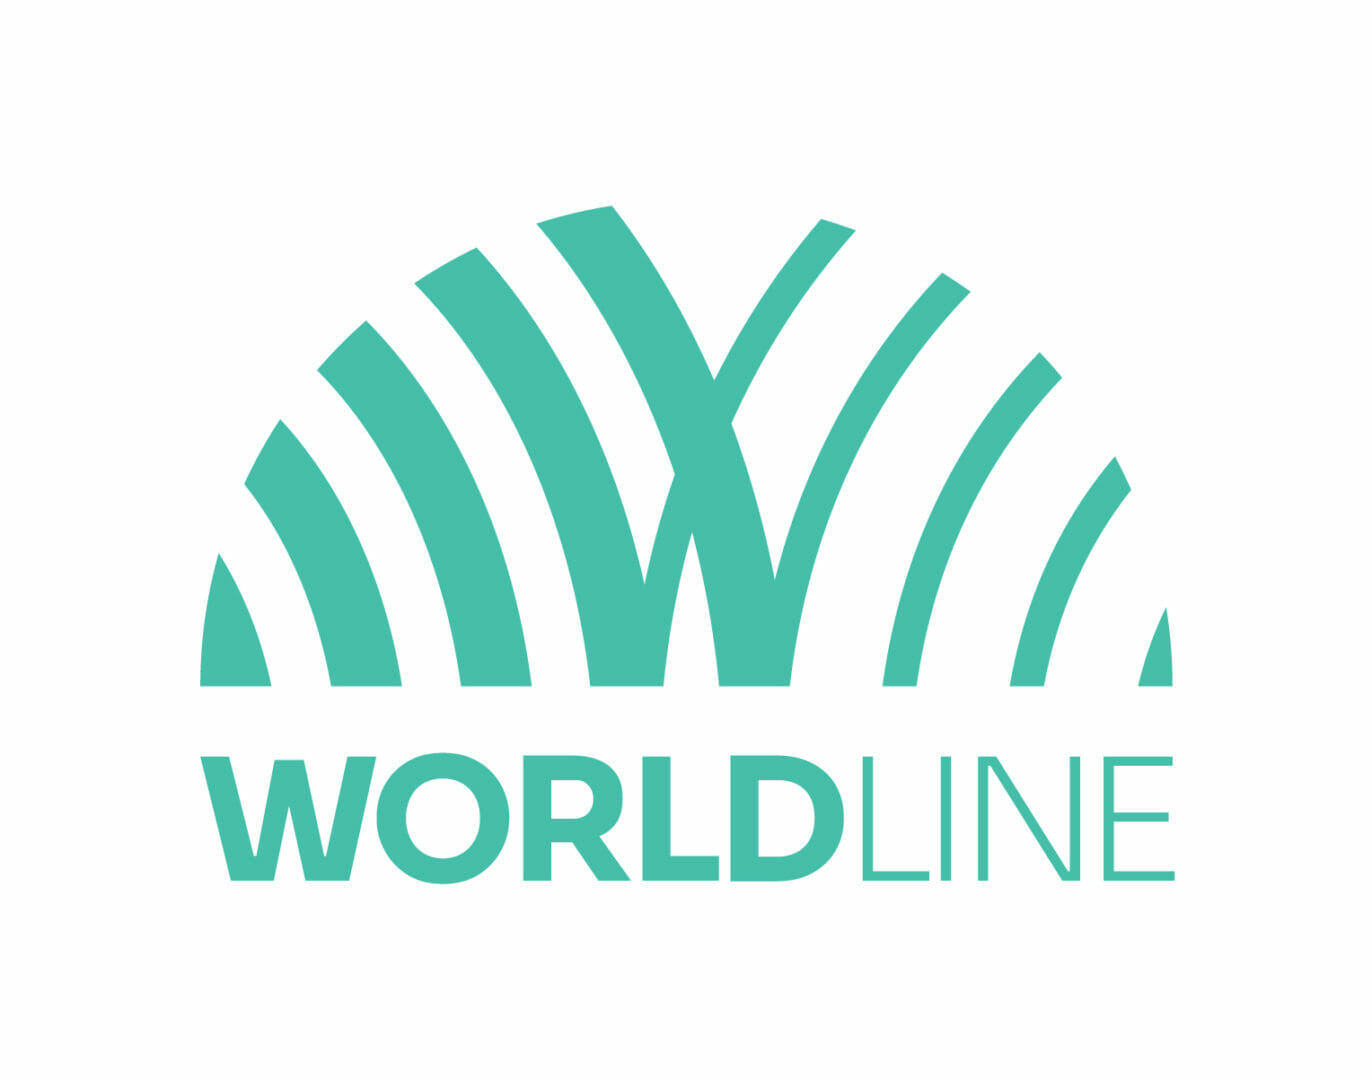 Worldline unveils new brand identity